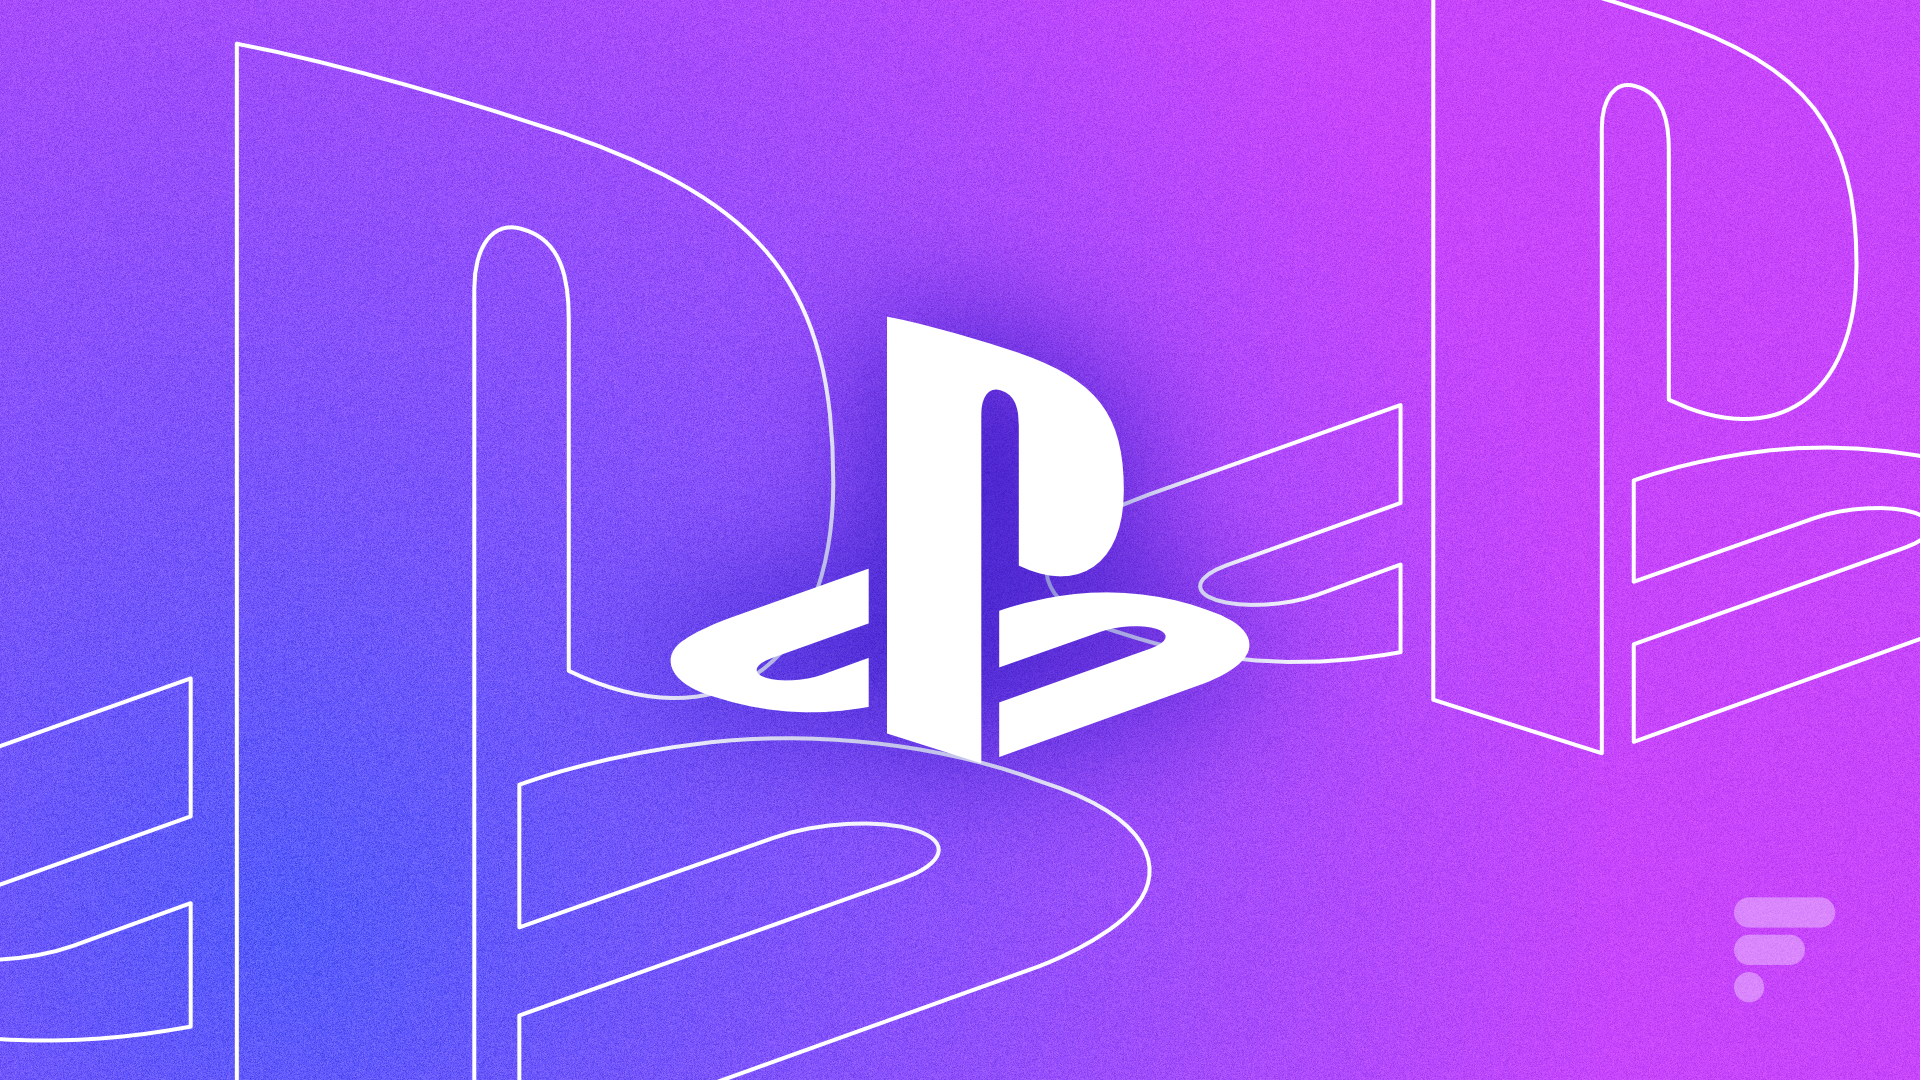 PlayStation Portal : la PS5 portable coûte 220 euros et n'est pas portable  - Numerama